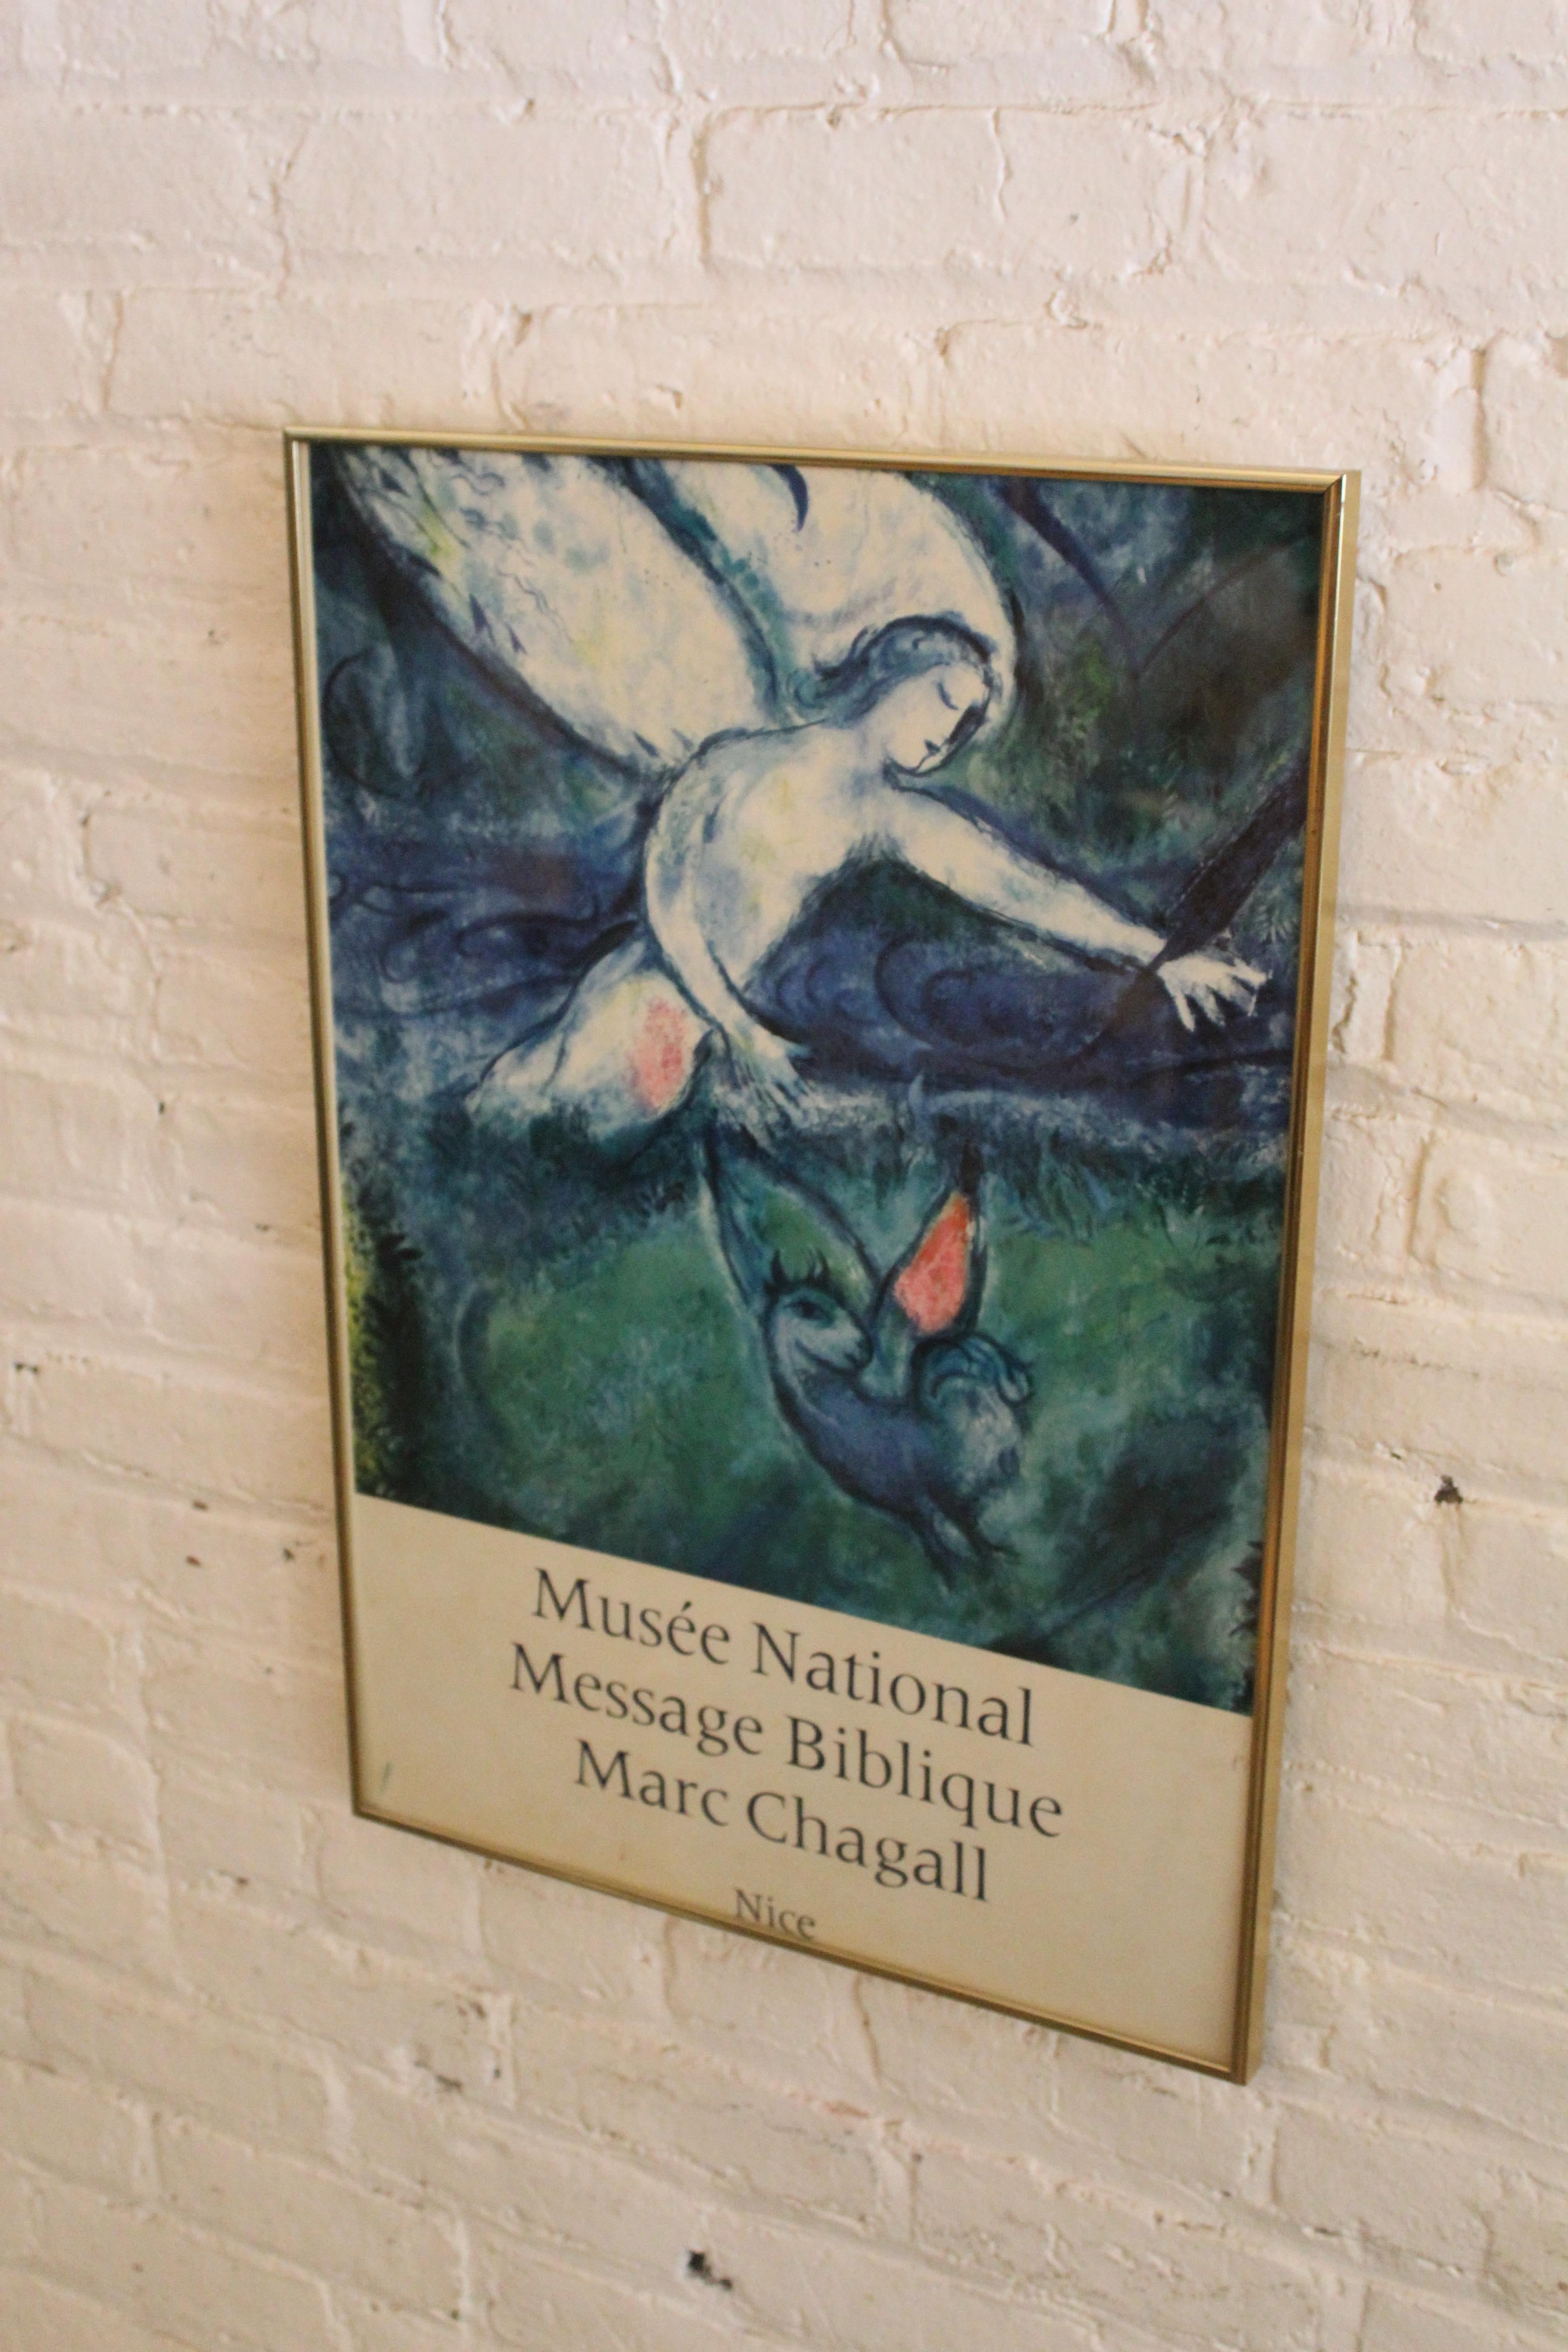 Verleihen Sie jedem Raum ein engelhaftes französisches Flair mit dieser gerahmten Vintage-Lithografie aus dem Musée National Marc Chagall in Nizza, Frankreich. Mit einer Nahaufnahme aus seinem ikonischen christlich-surrealistischen Werk 